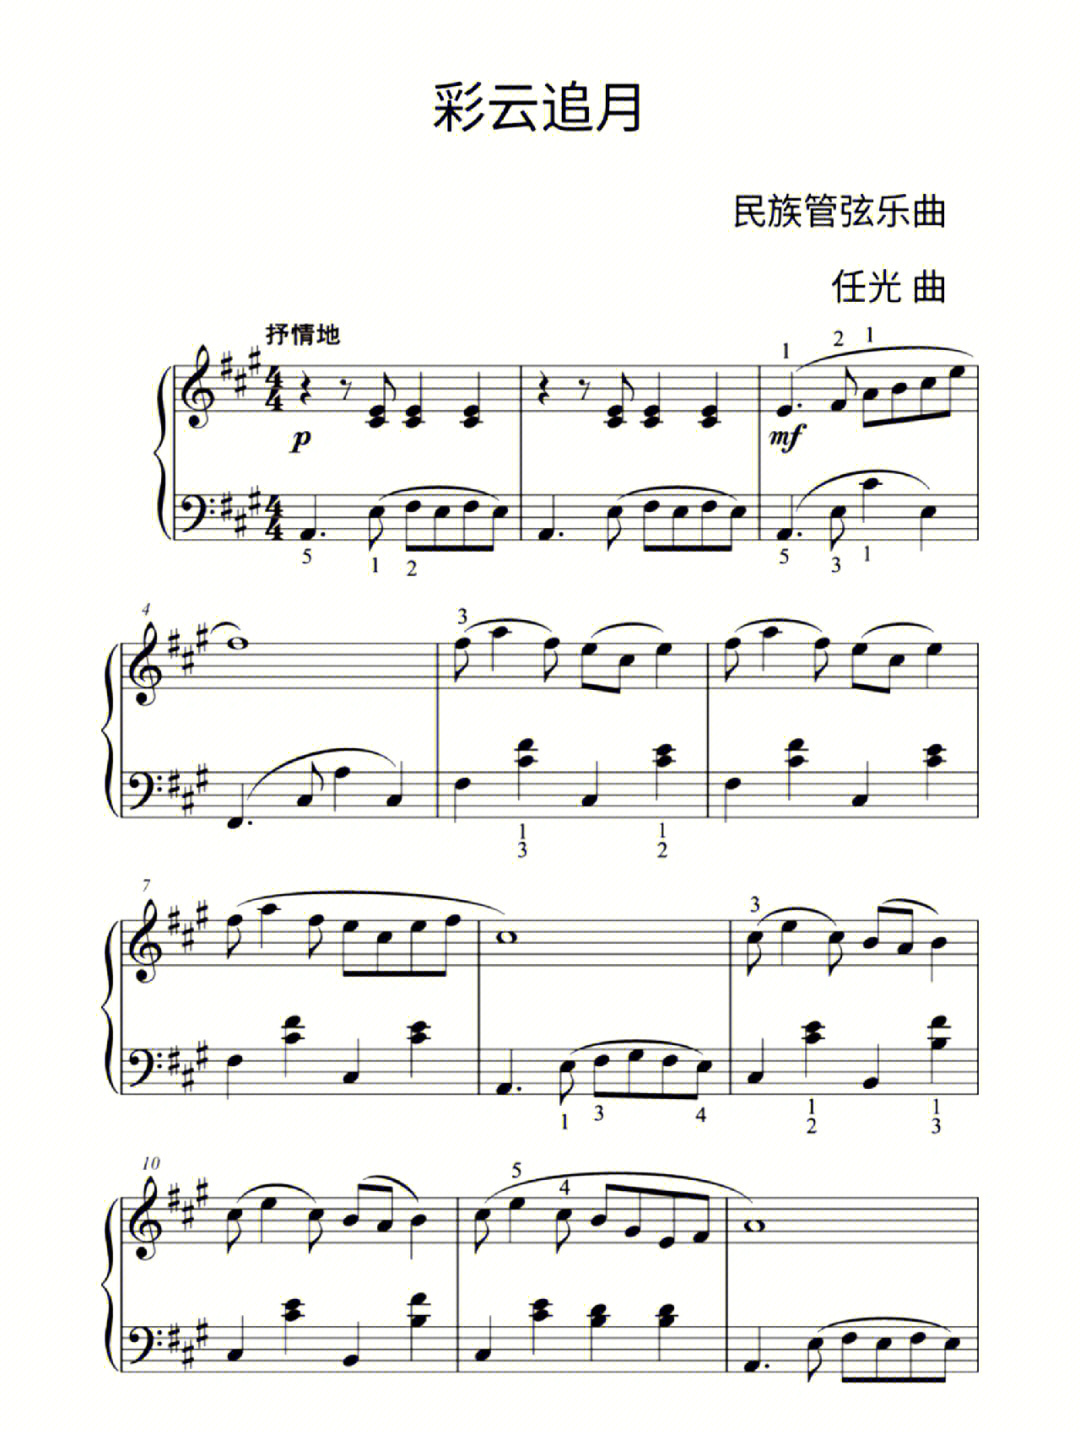 简易中国民乐钢琴谱子以及曲目讲解74